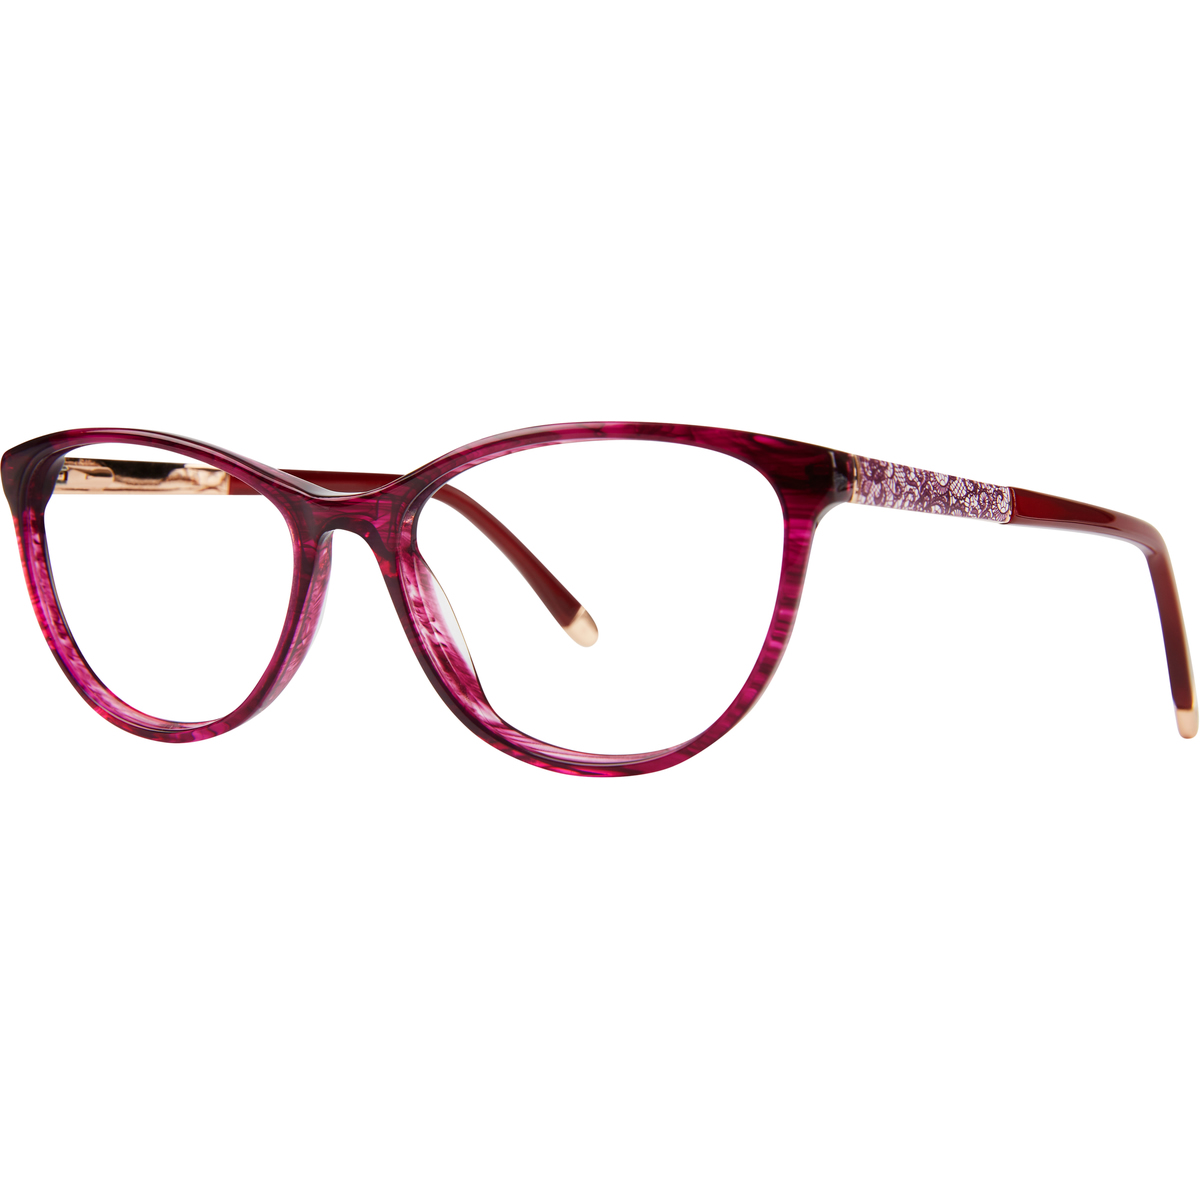 Paul Costelloe 5208 Glasses | Buy Glasses, Glasses Frames & Sunglasses ...